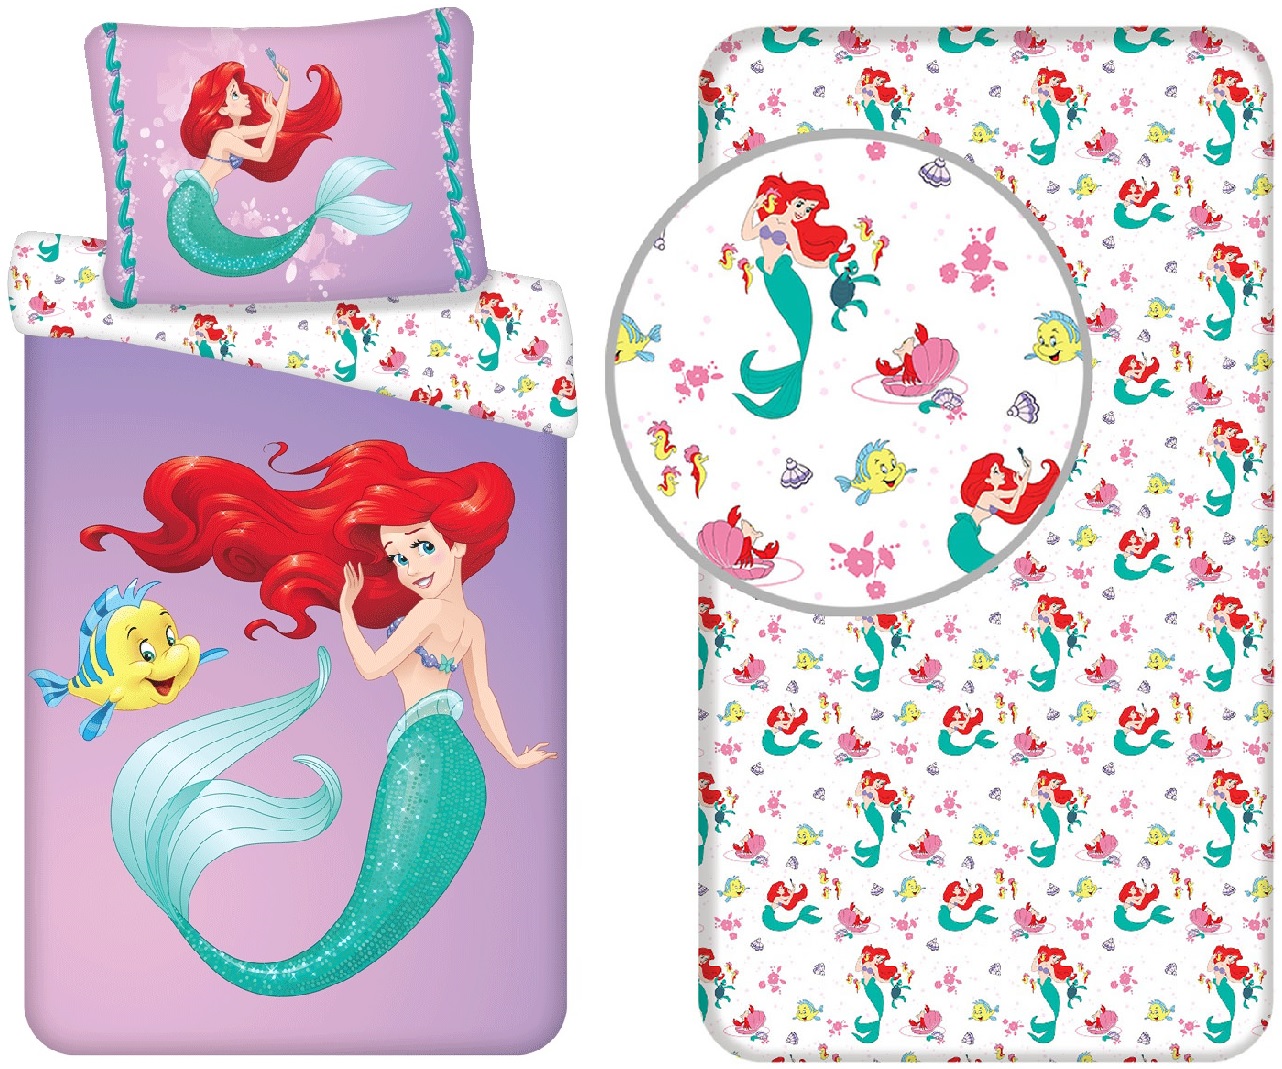 Disney Arielle die Meerjungfrau Kinder Bettwäsche Set 140x200 + 70x90 cm und Spannbetttuch 90x200 cm, 100 % Baumwolle, Komplettset